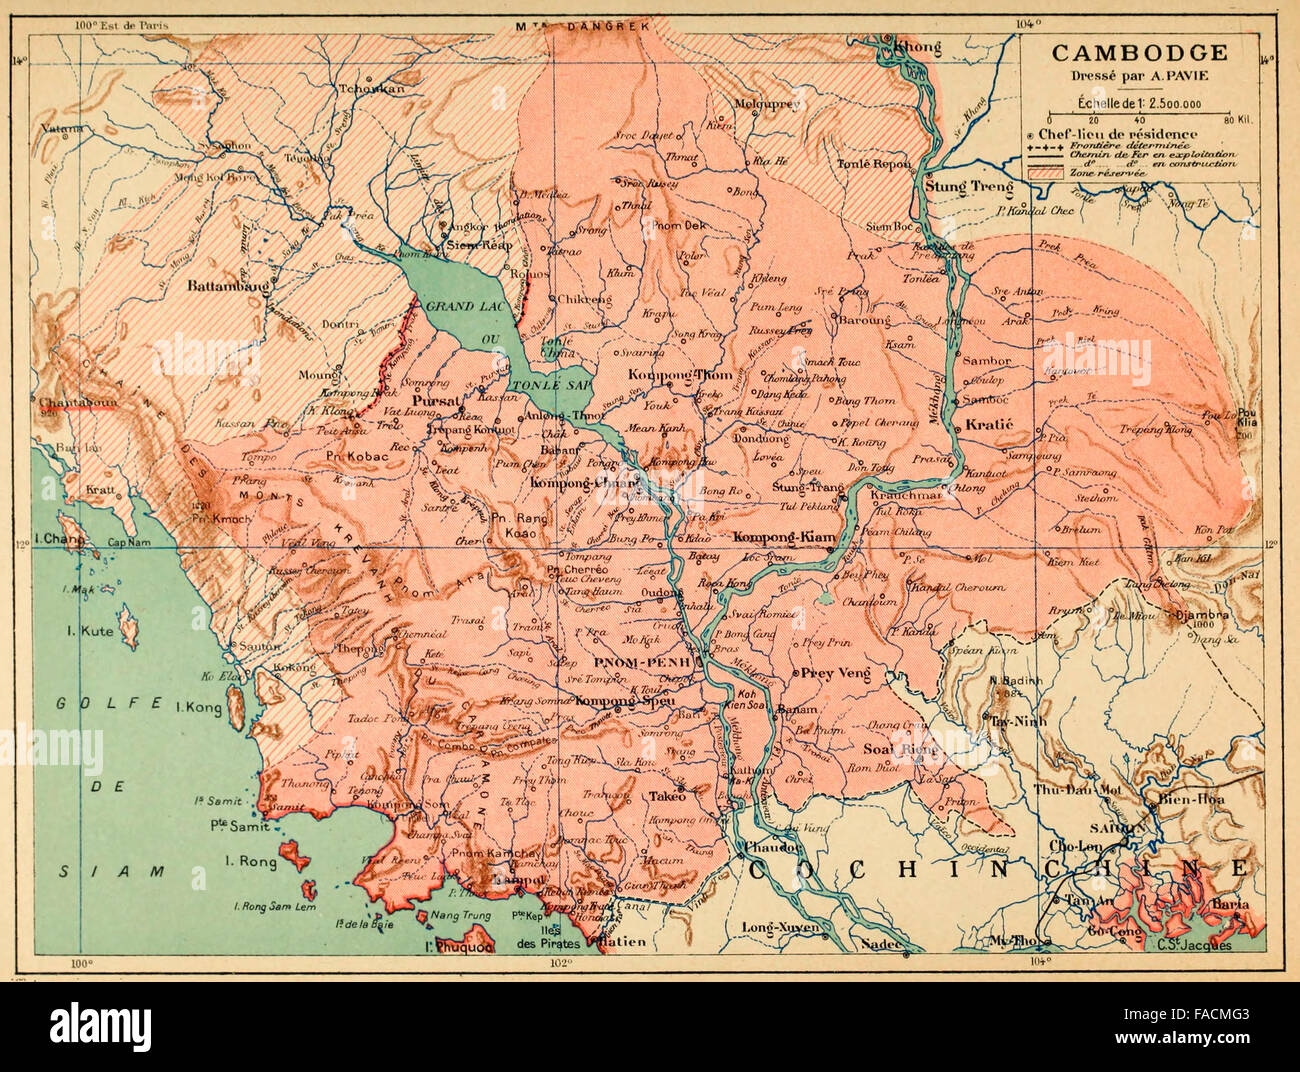 Cambogia - Francese Indochine, circa 1890. Mappa testo in francese. Cambogia - Indocina Francese Foto Stock